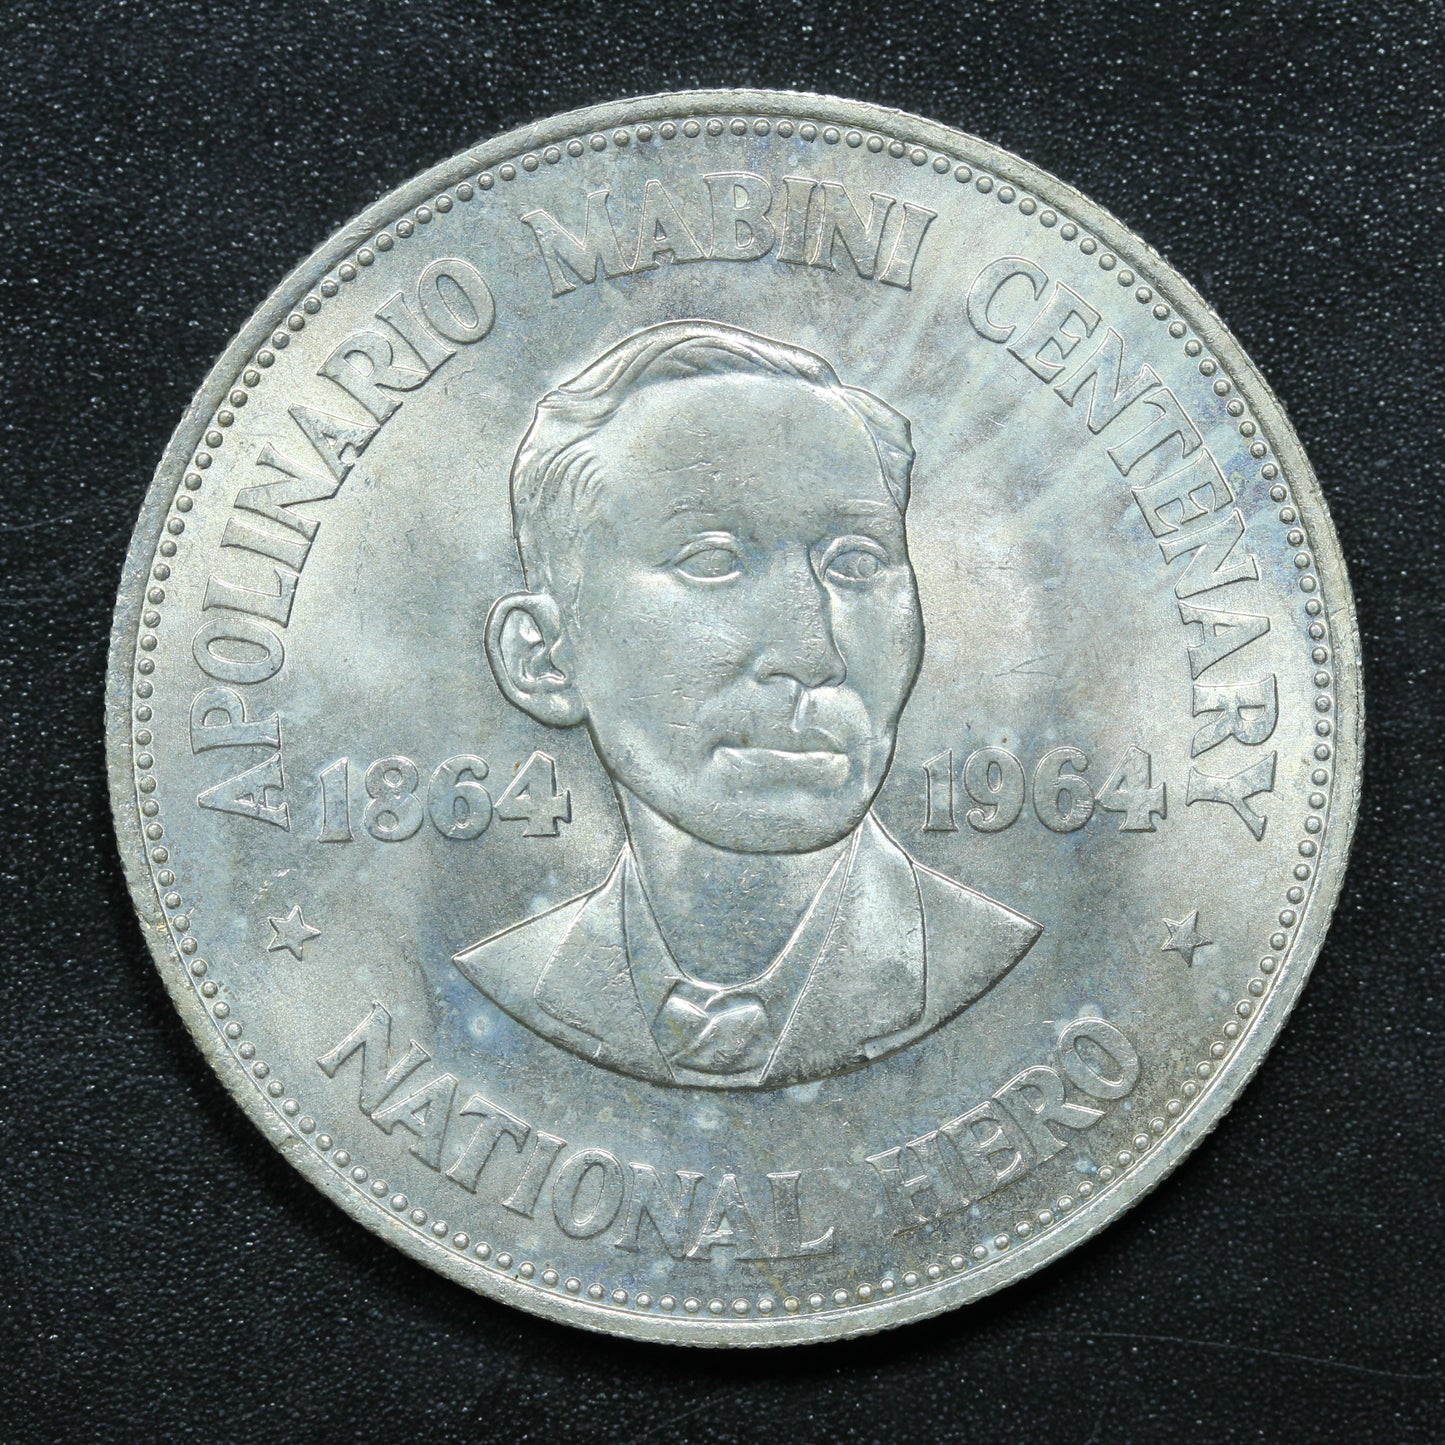 1964 1 Peso Philippines Silver Coin 100th Anniv. Apolinario Mabini KM# 194